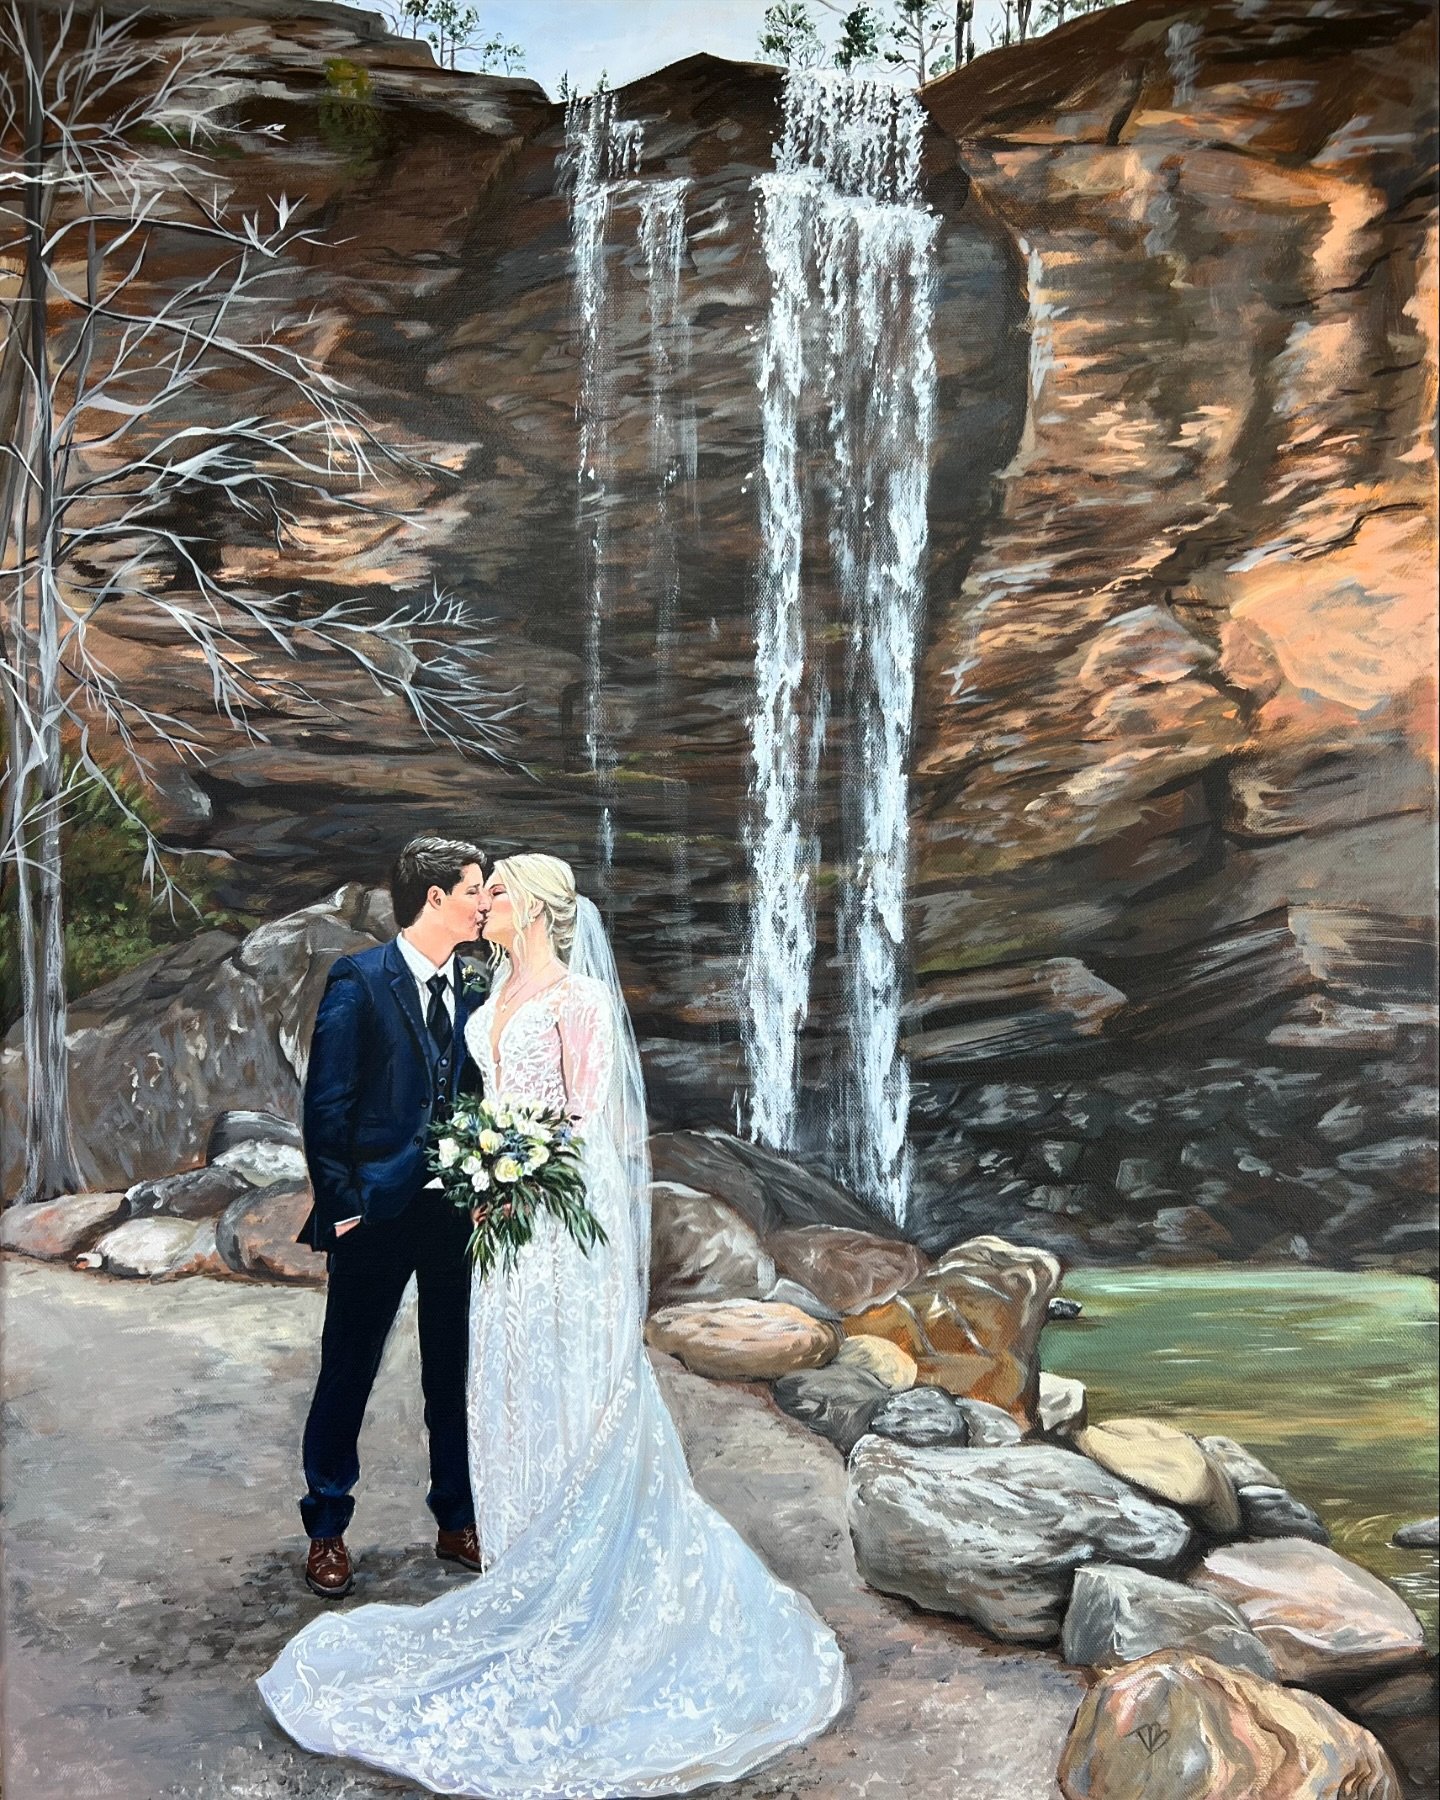 Finished Live Wedding Painting for Ashley &amp; Colton 🤍 
24x30

#liveweddingpainting #liveweddingpainter #toccoafallswedding